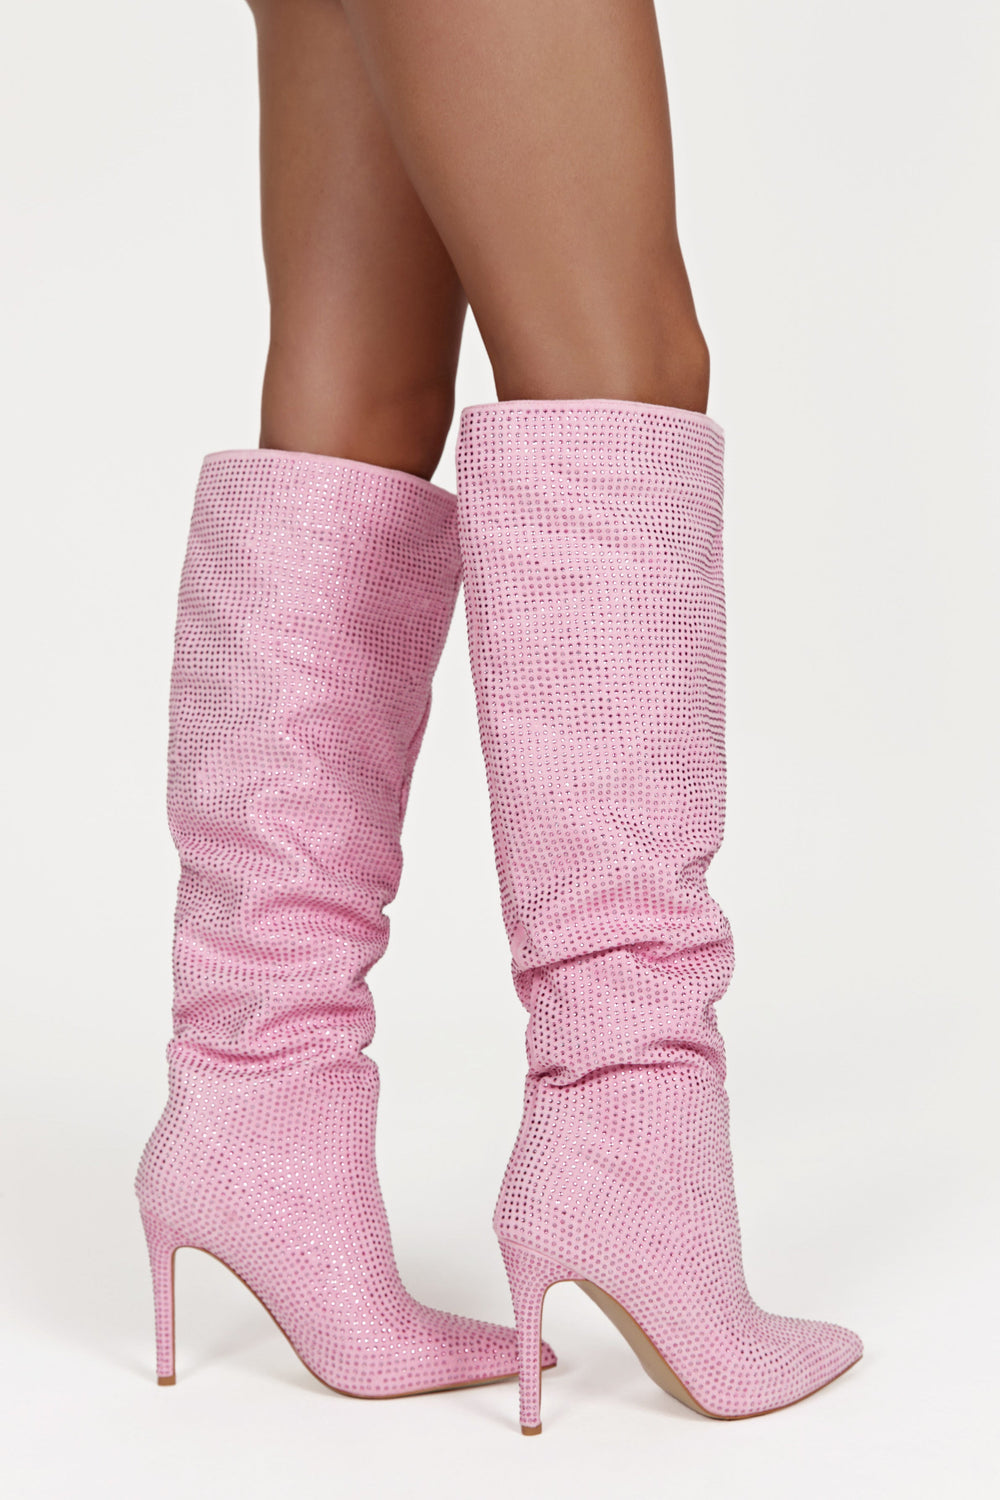 Jenner Diamante High Heel Boot - Blush Pink